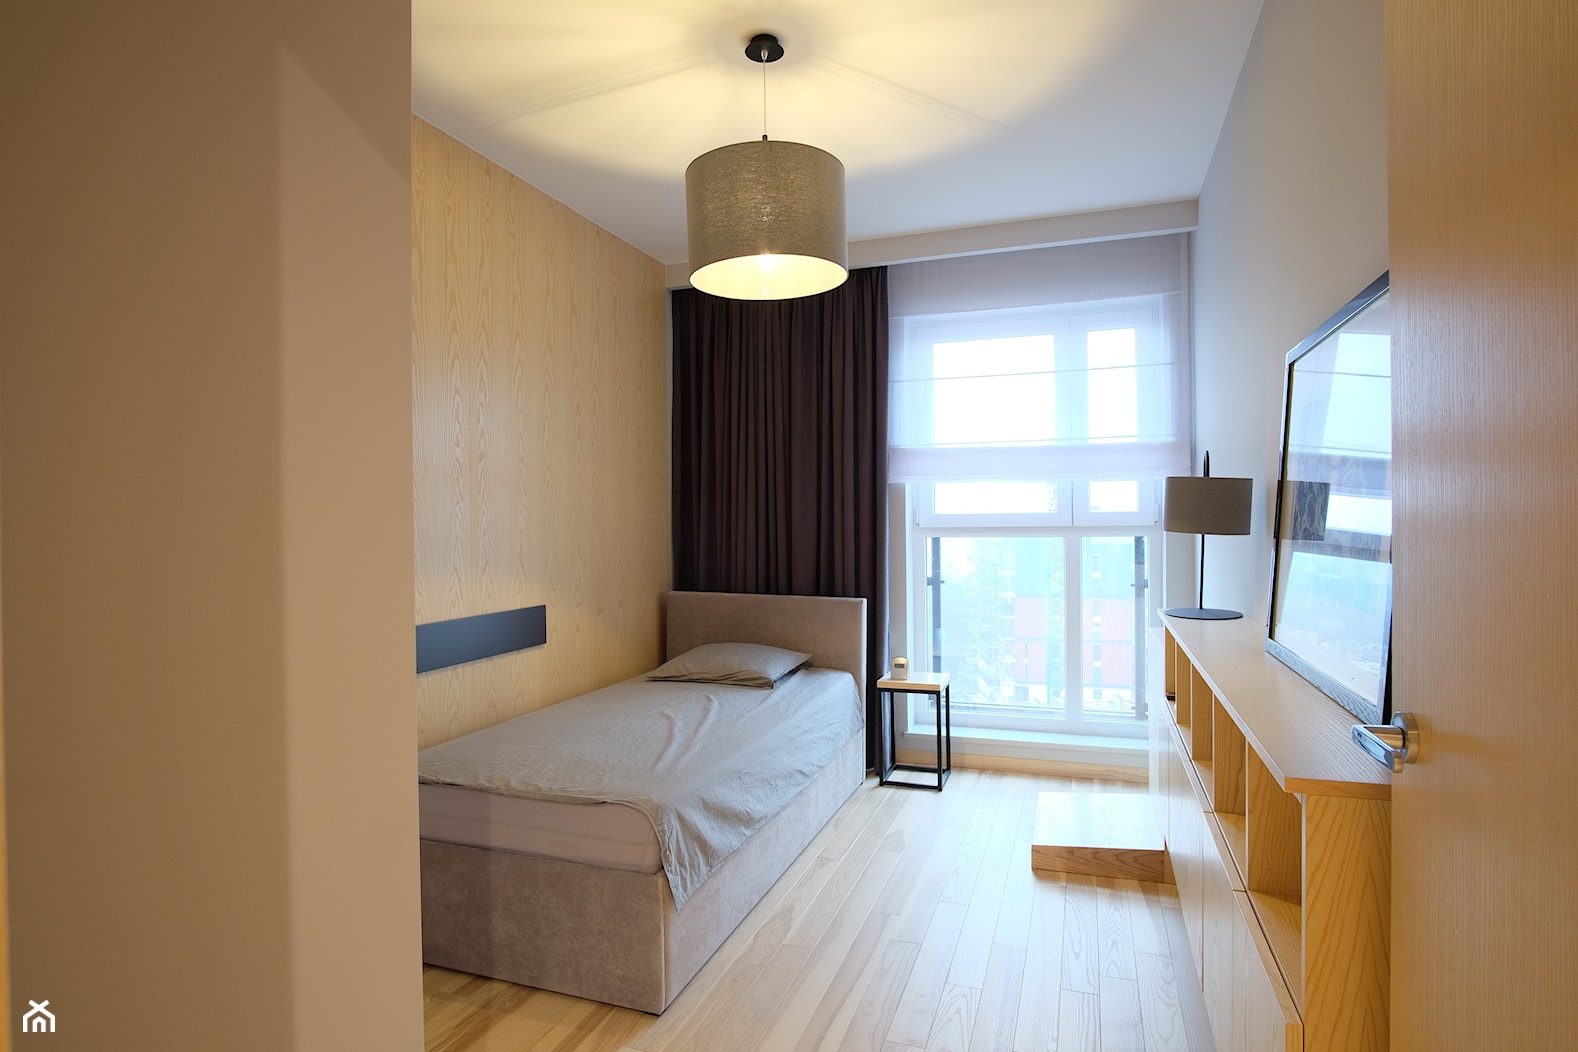 Sypialnia w stylu minimalistycznym - zdjęcie od Inside Projekty Wnętrz. Małgorzata Więch - Homebook